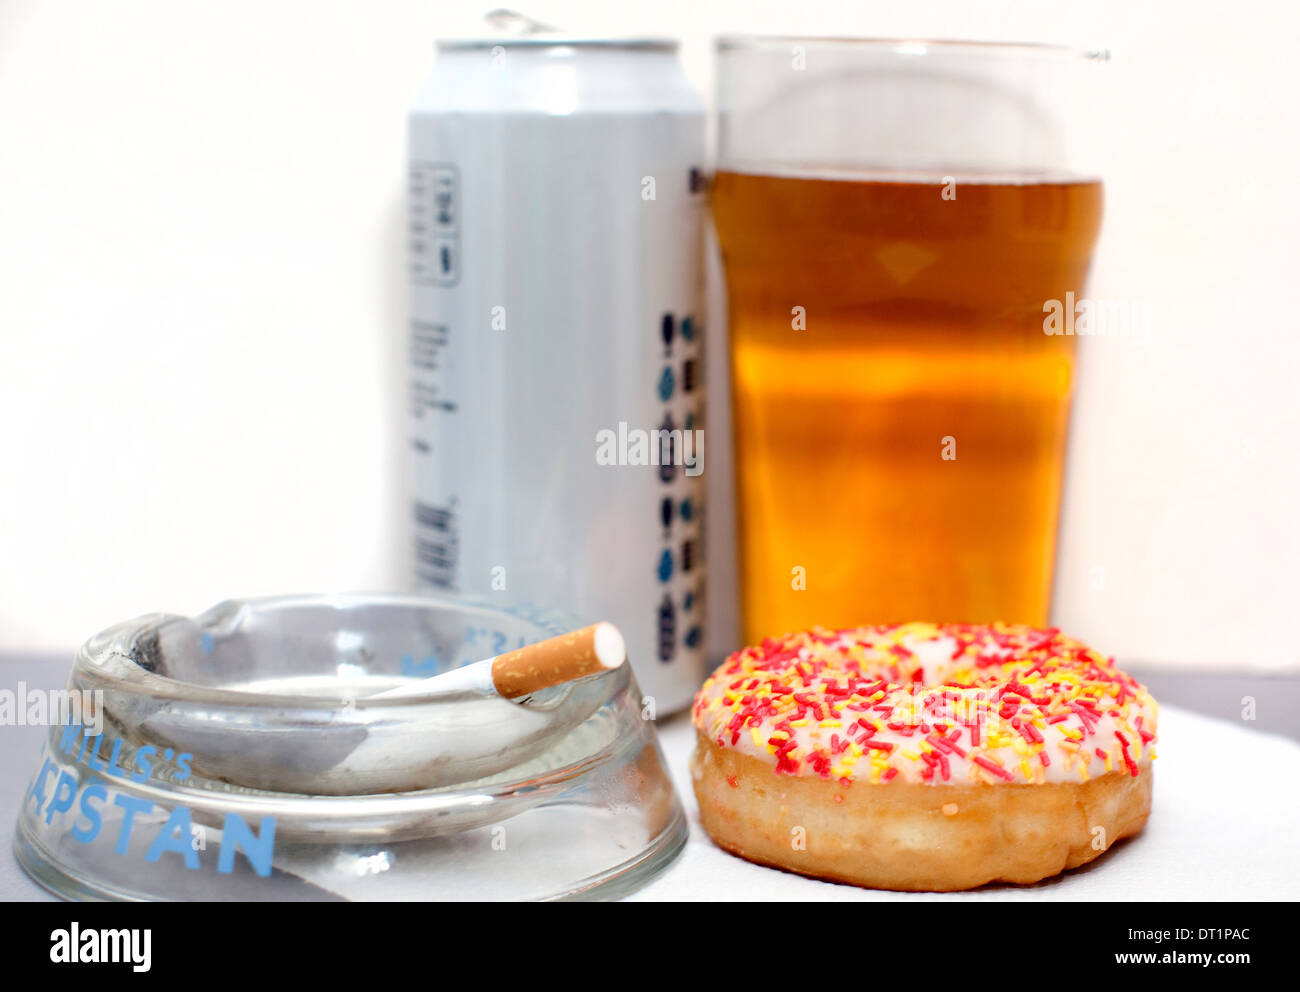 Rauchen, Alkohol, Zucker und Fett gemeinsame Mitwirkende zu gesundheitlichen Problemen, London Stockfoto